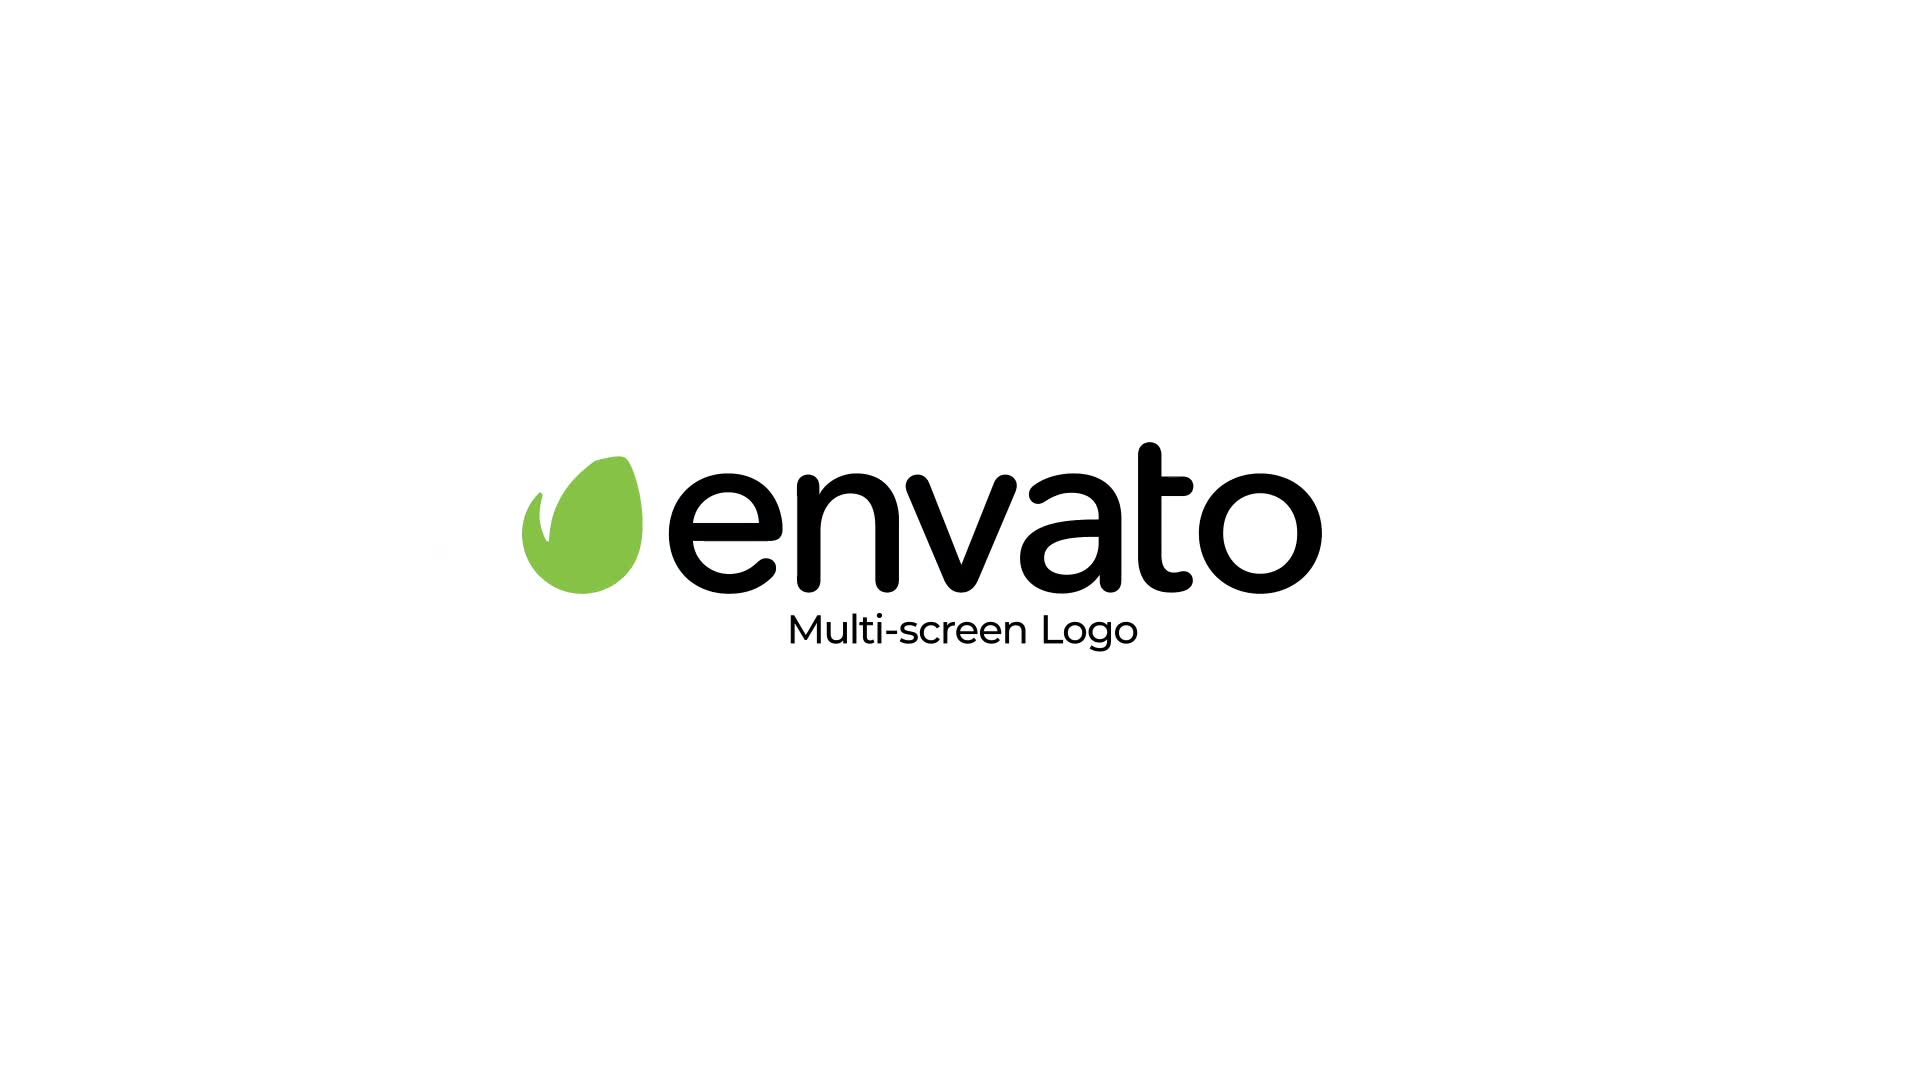 MultiScreen Logo Reveal for Premiere Pro Videohive 39657905 Premiere Pro Image 10